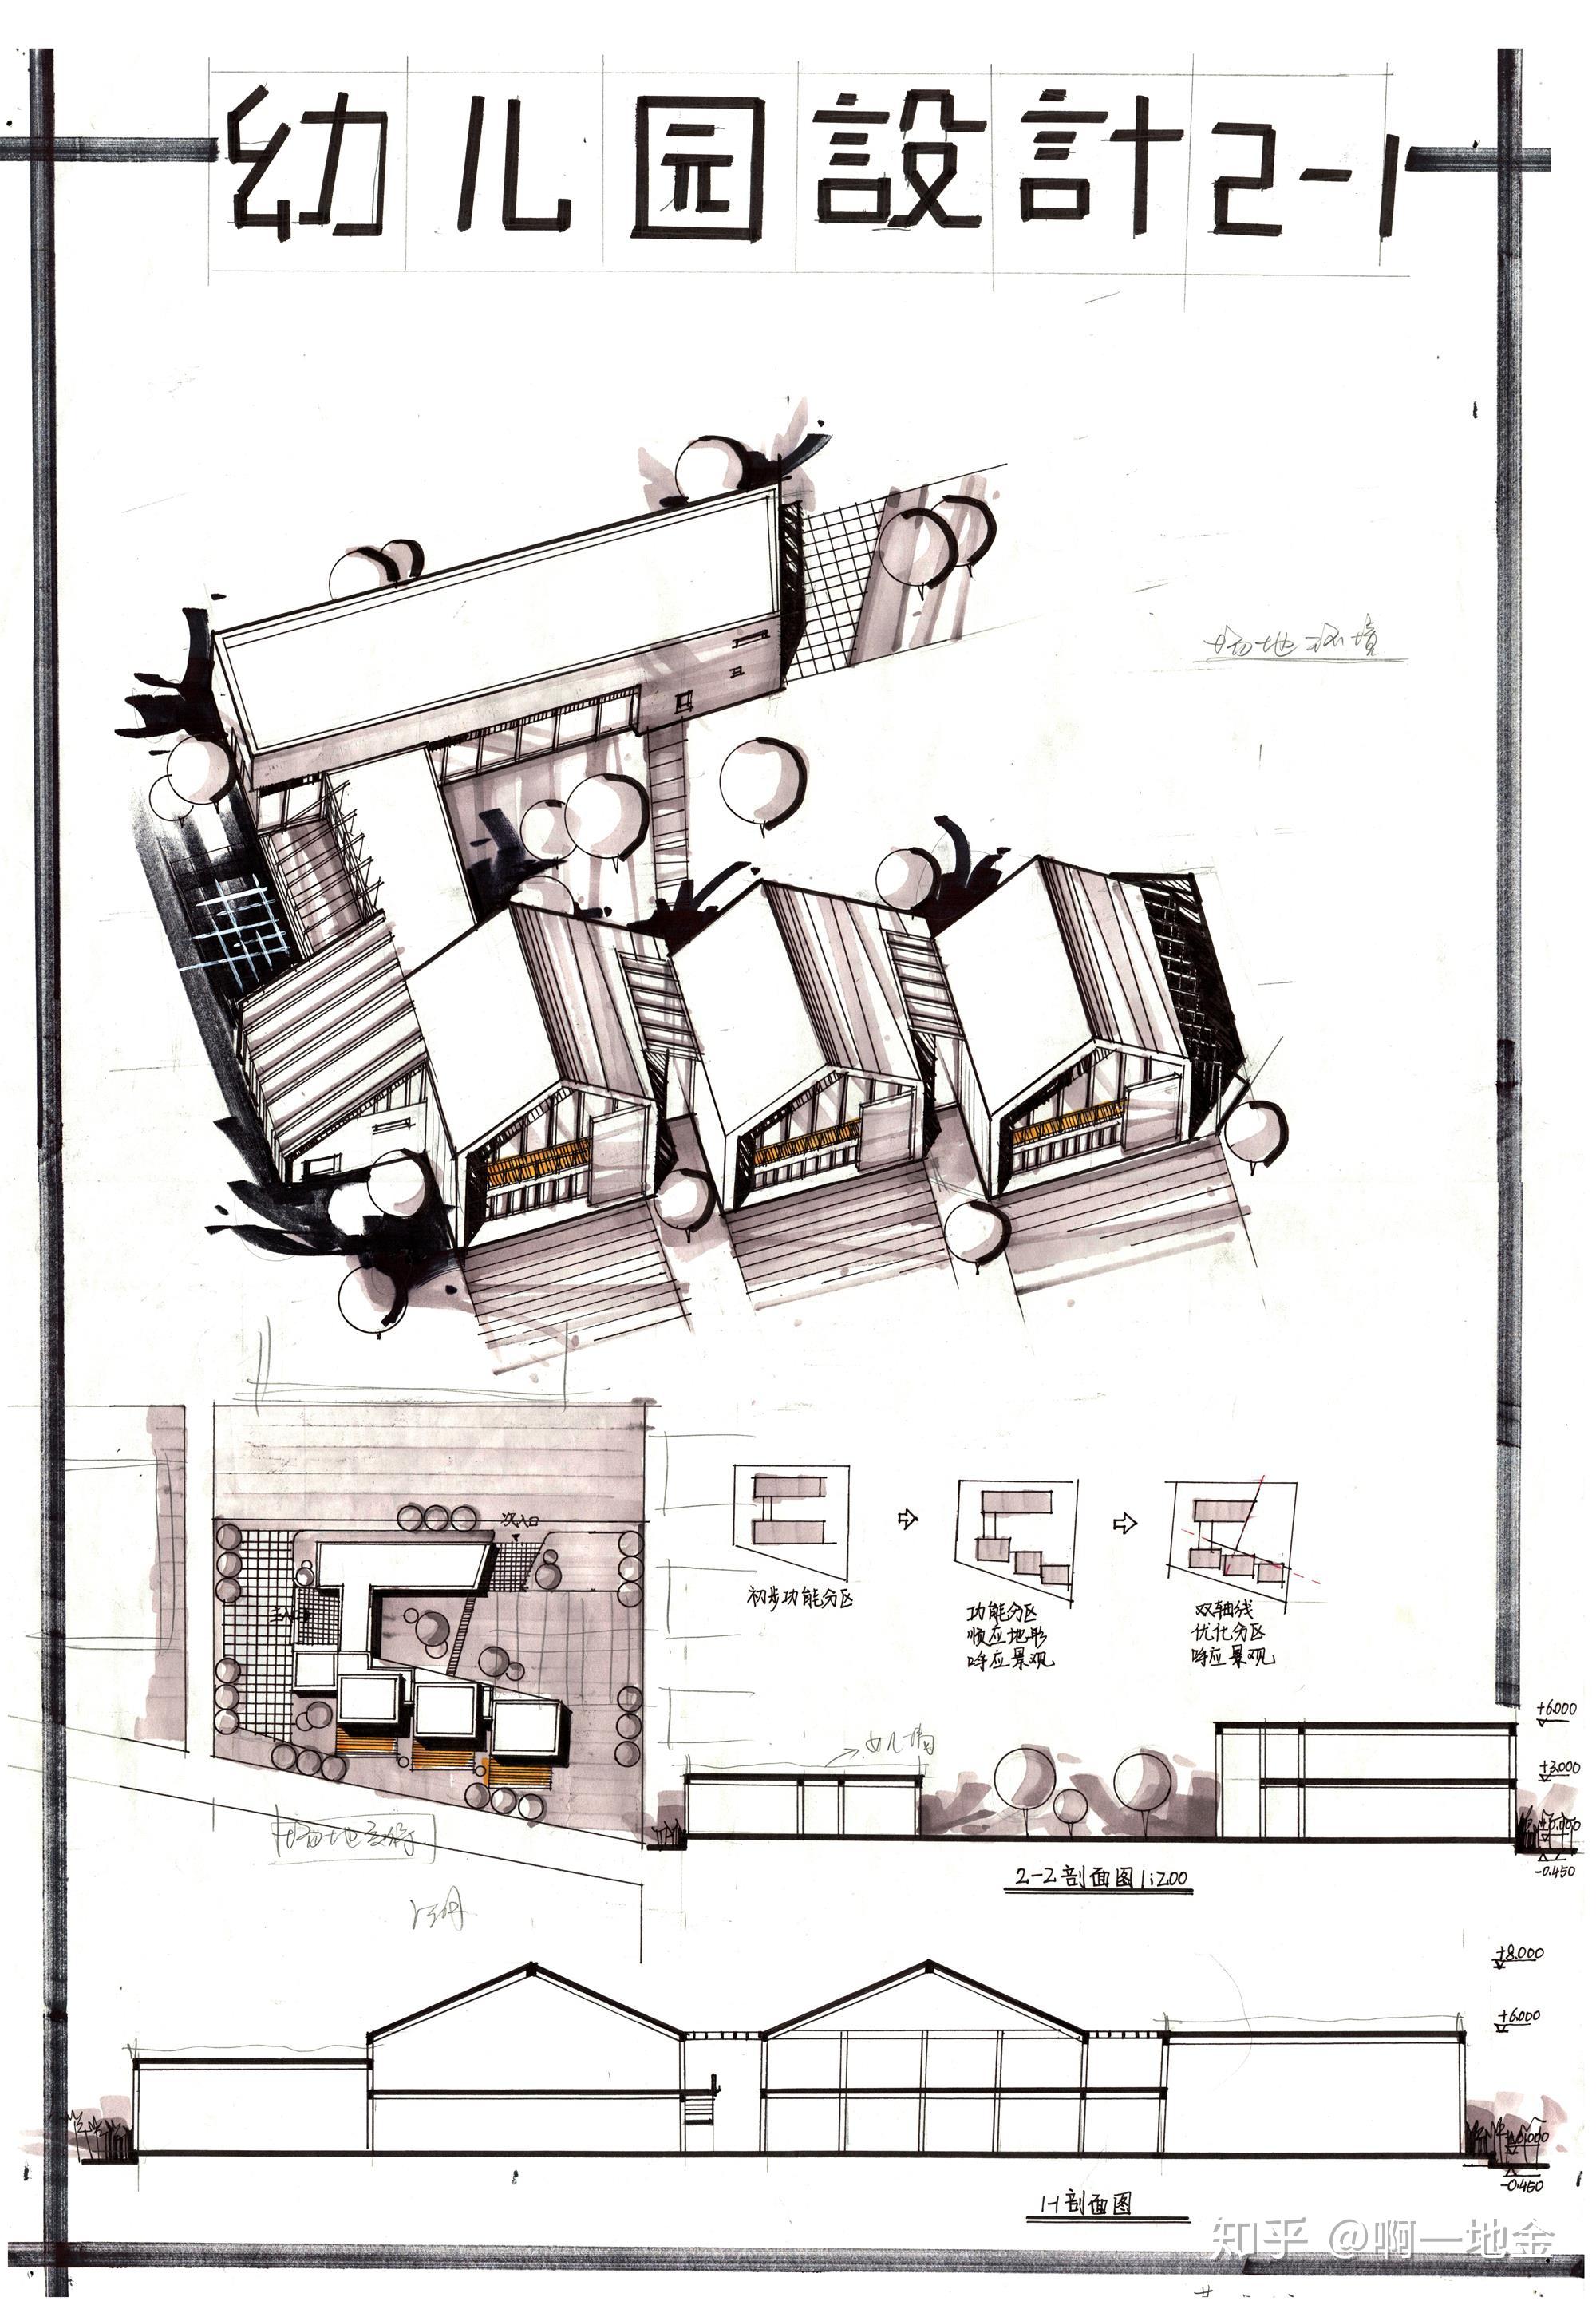 今日分享三幼儿园设计第一弹大禹手绘建筑快题优秀作品欣赏